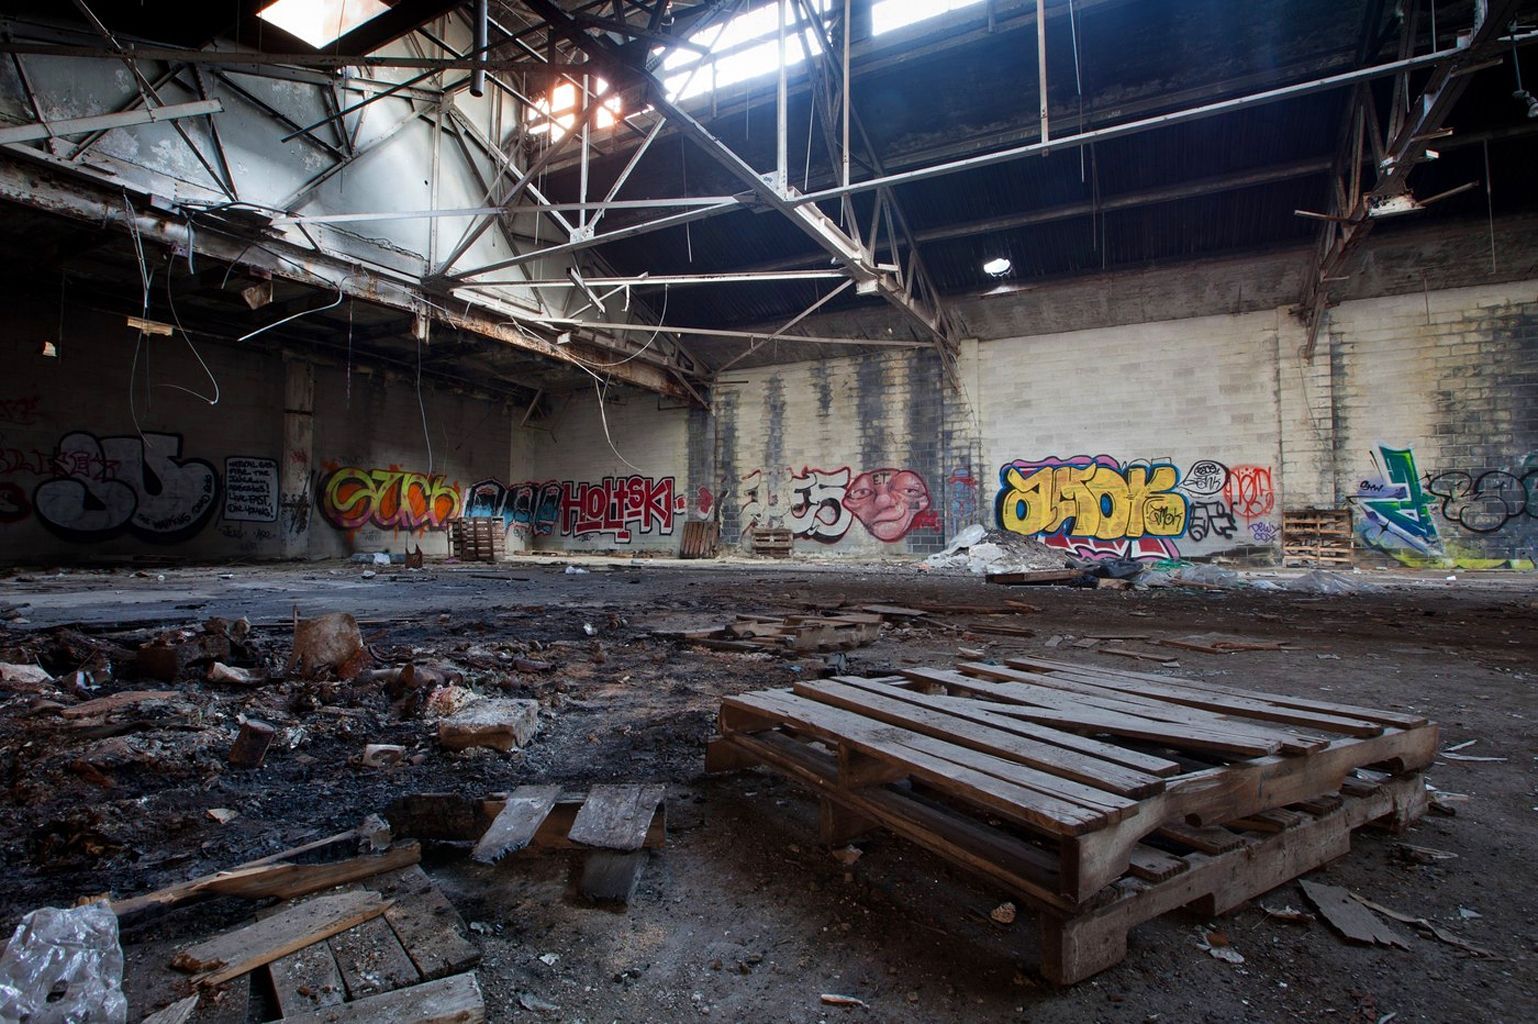 Fotogalerie: Zkrachovalé město Detroit